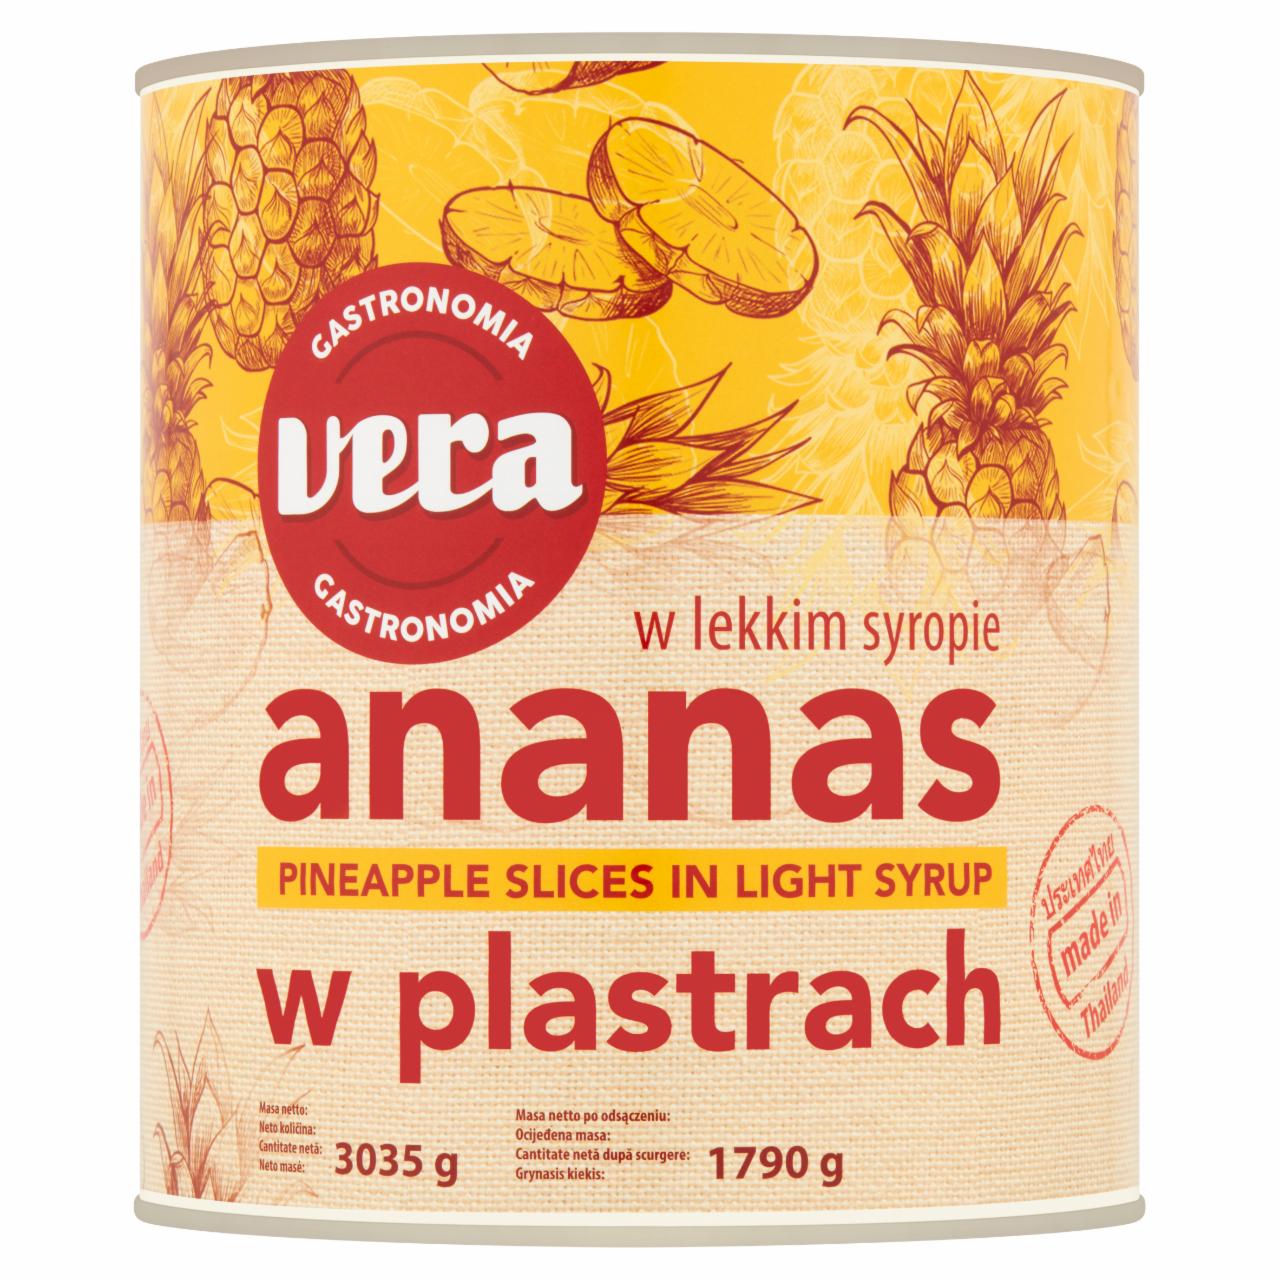 Zdjęcia - Vera Gastronomia Ananas w plastrach w lekkim syropie 3035 g